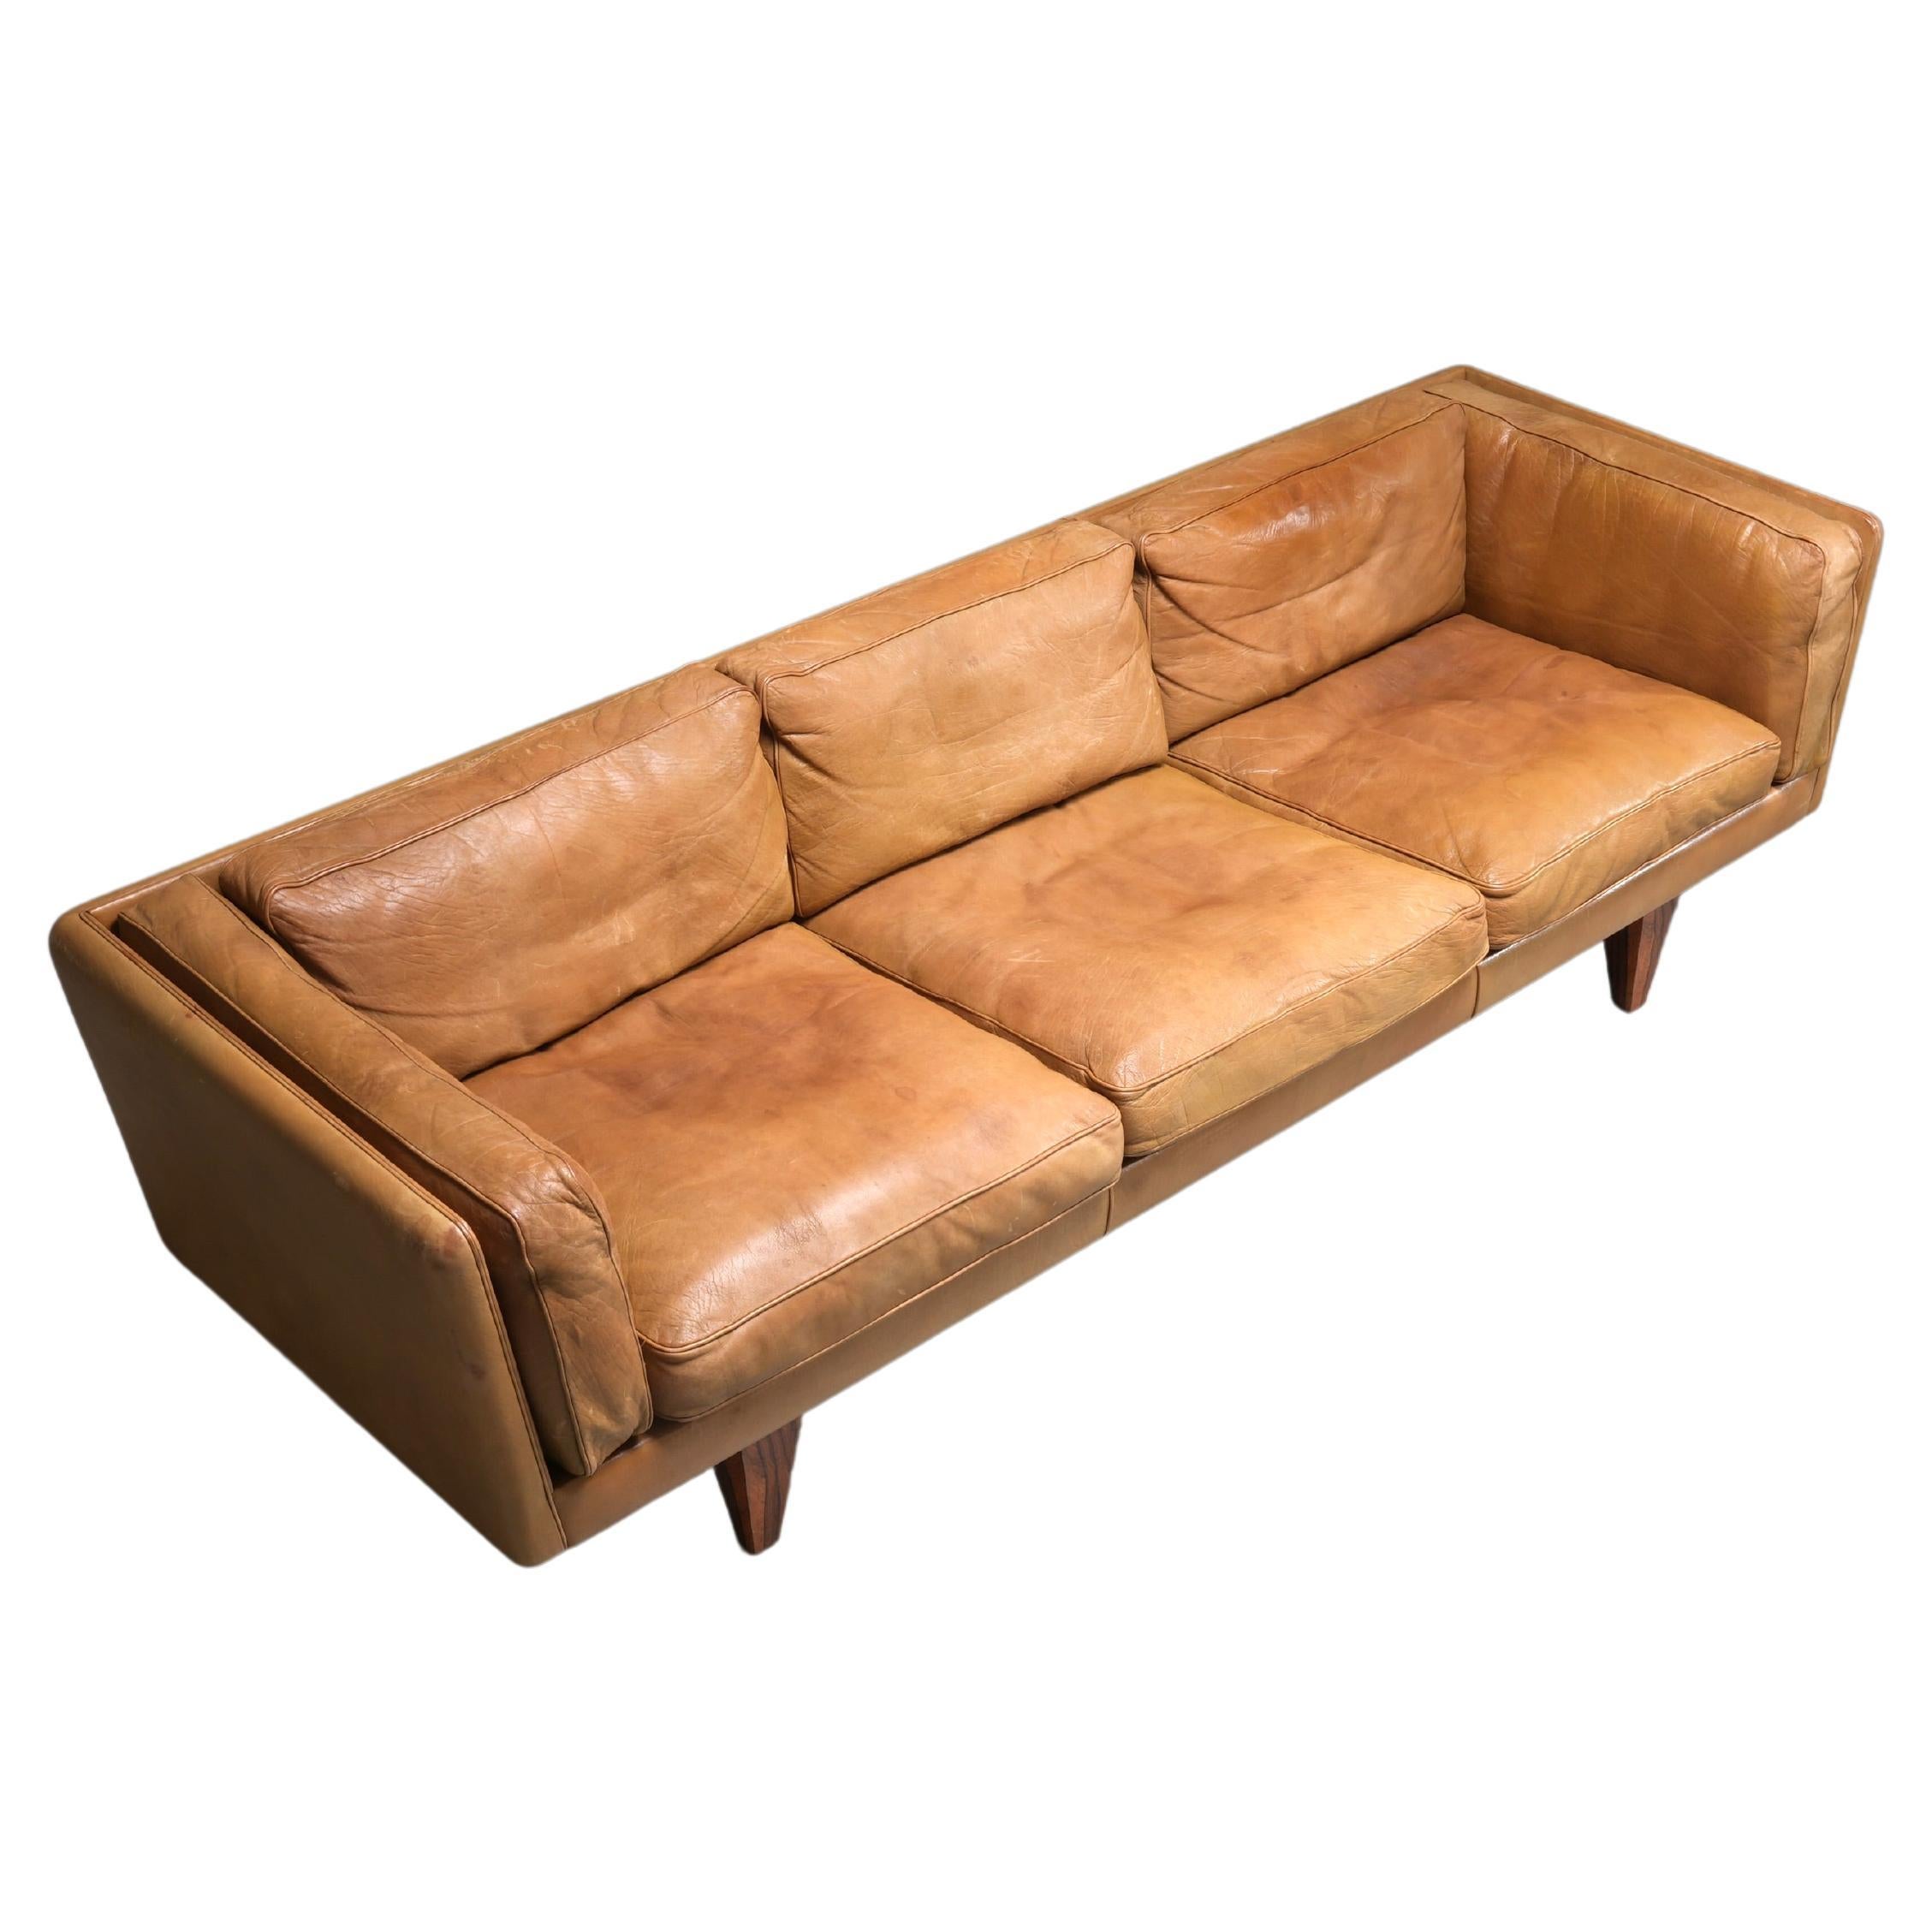 Illum Wikkelsø Three-Seat ‘V11’ Sofa in Cognac Leather, Denmark, 1960s For Sale